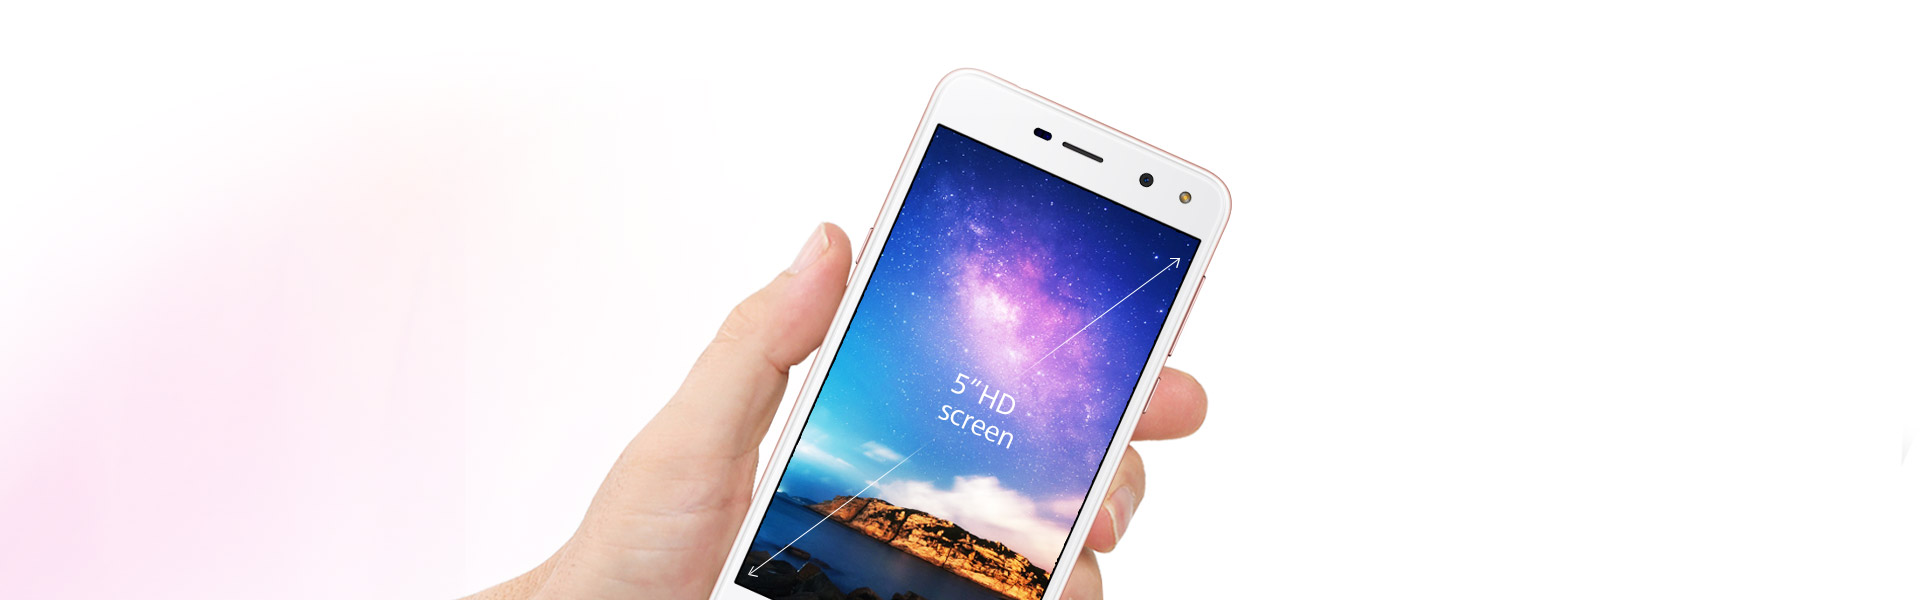 5 寸屏、2GB RAM、800 萬像素鏡頭：Huawei Y5 (2017) 正式發布；入門級智能手機！ 1